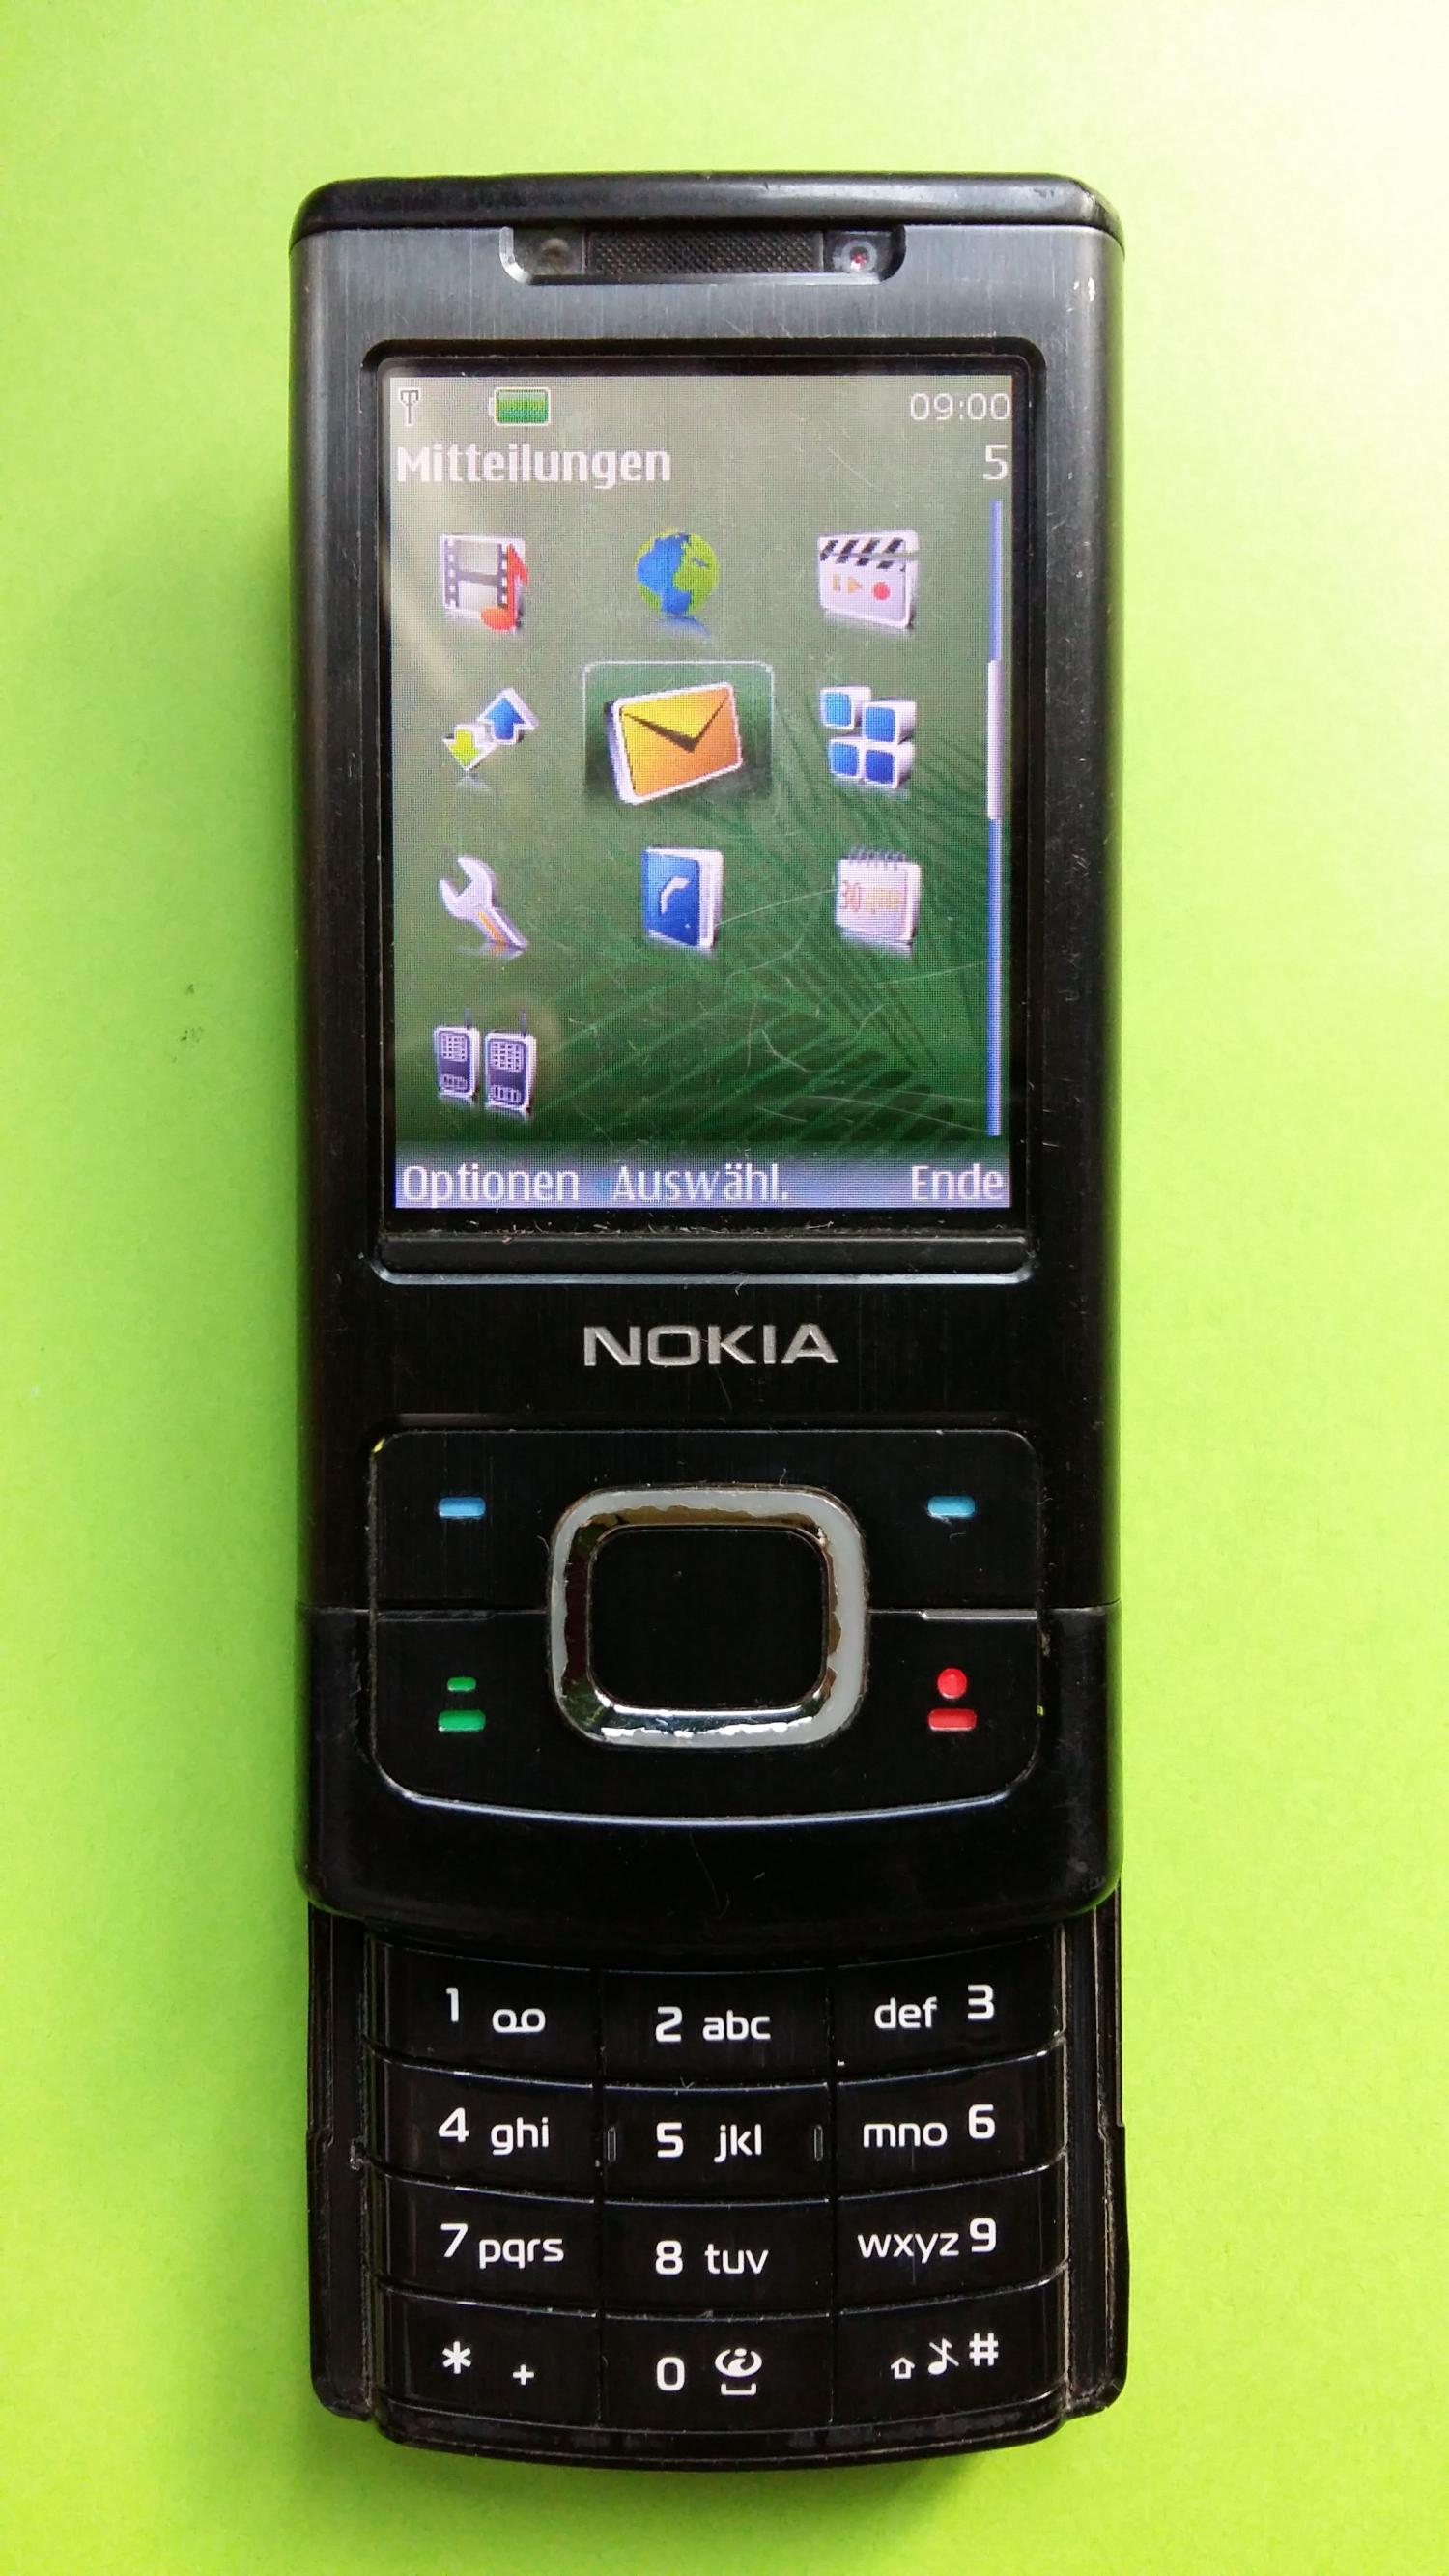 image-7325290-Nokia 6500S-1 (7)2.jpg